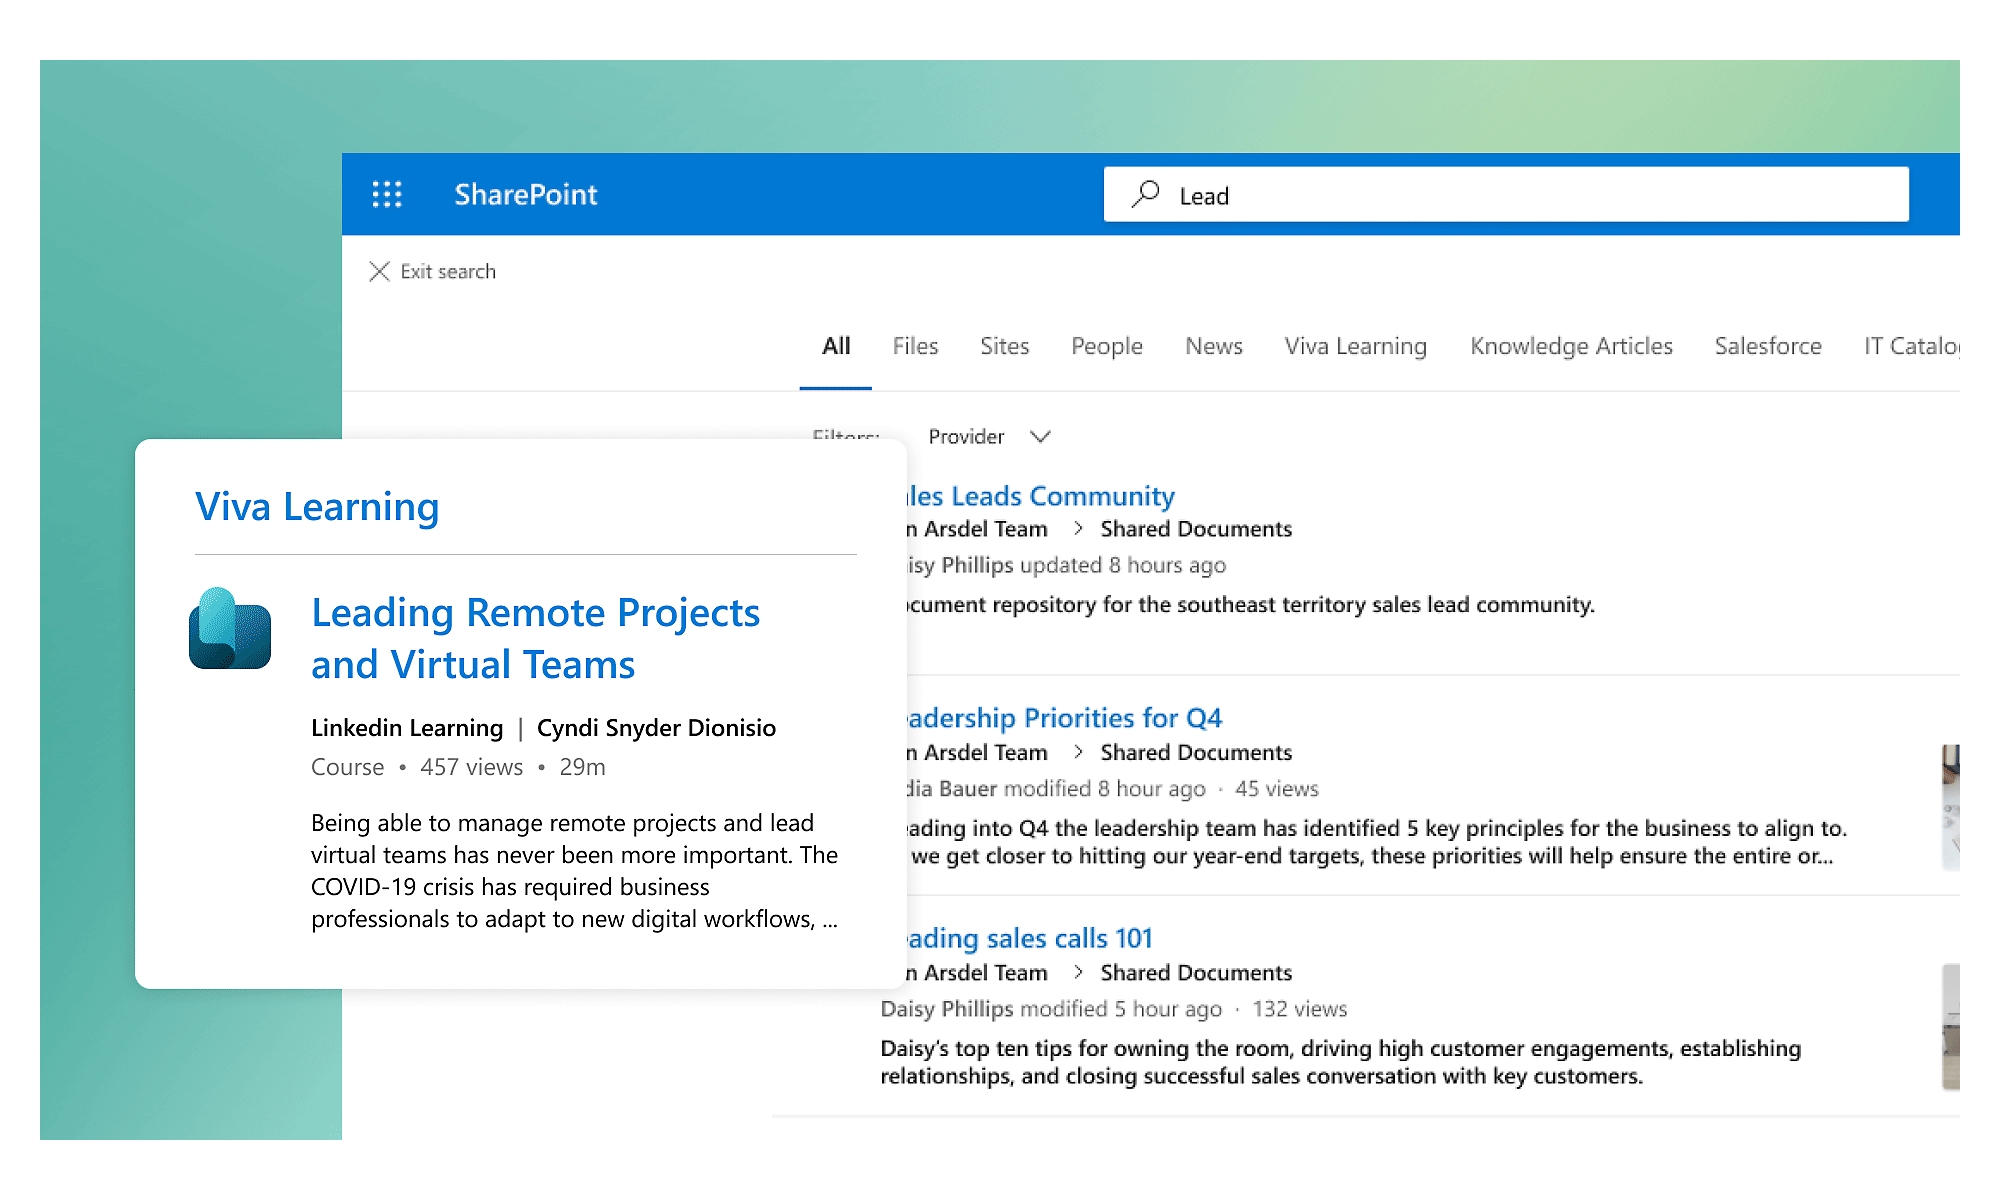 SharePoint’te “Lead” (potansiyel müşteri) araması için Viva Learning’den ilgili içeriklerin yer aldığı sonuçlar.